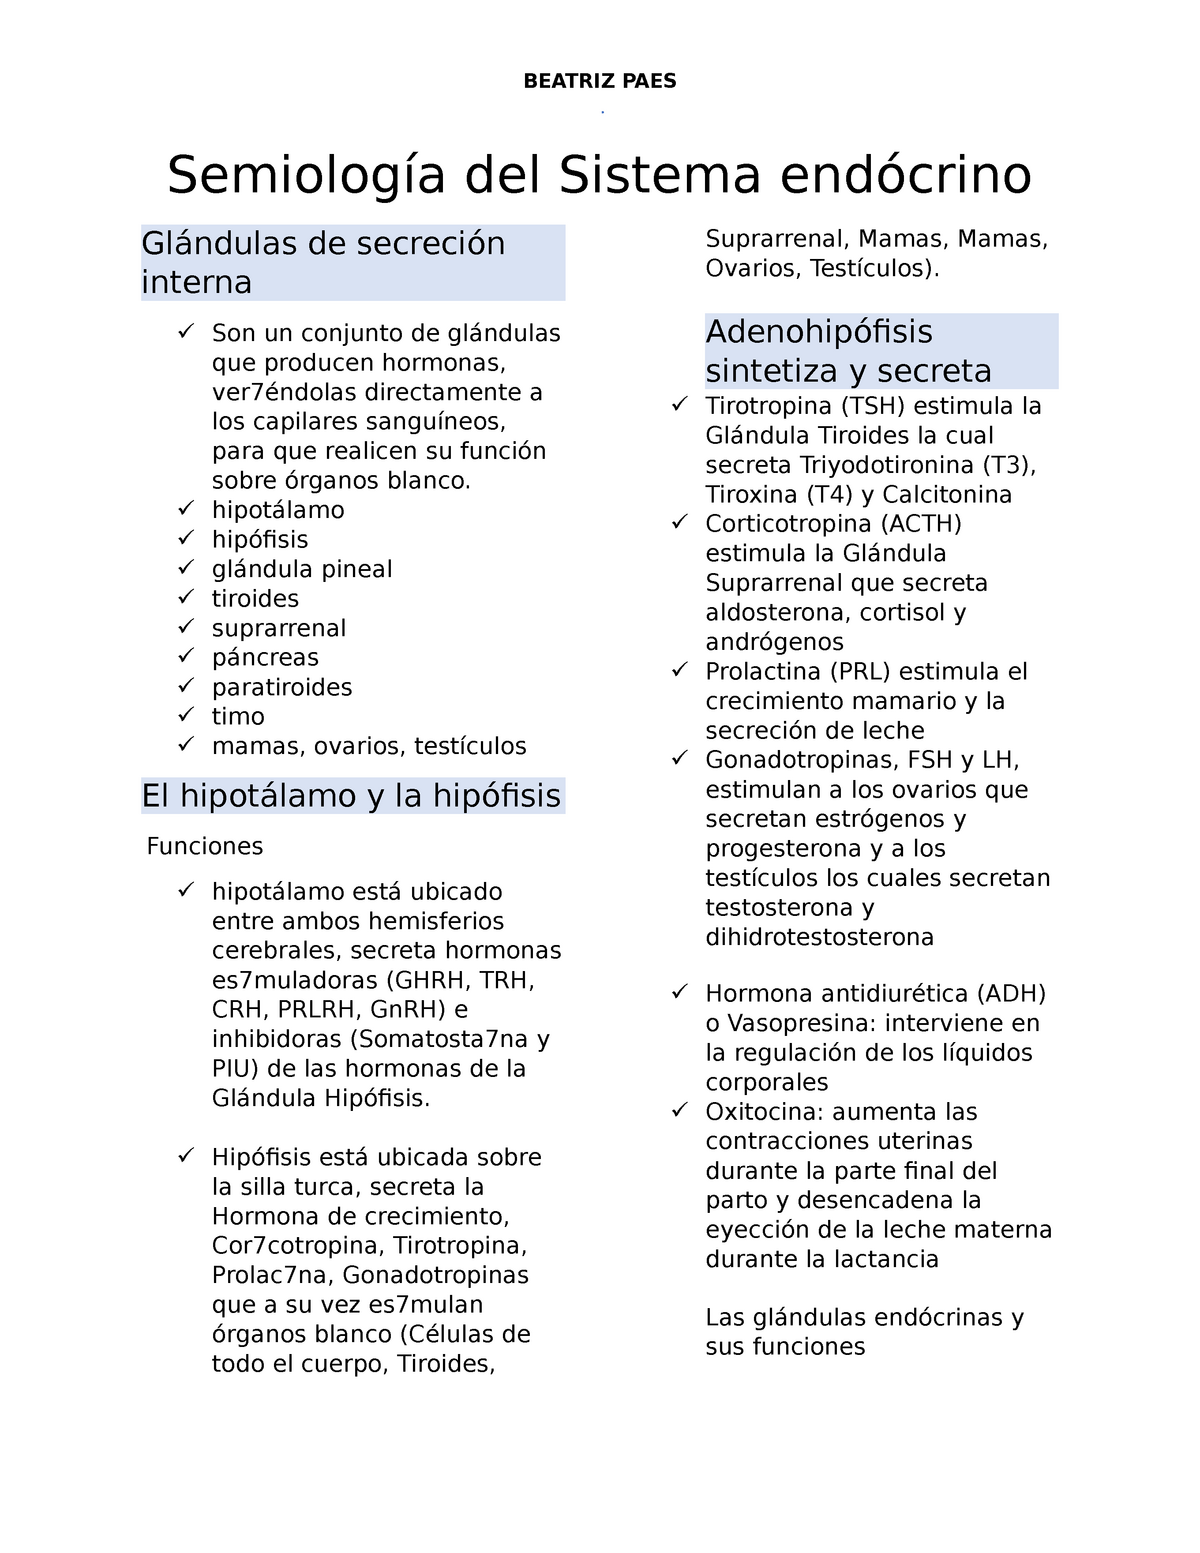 6° semiología sistema endocrino